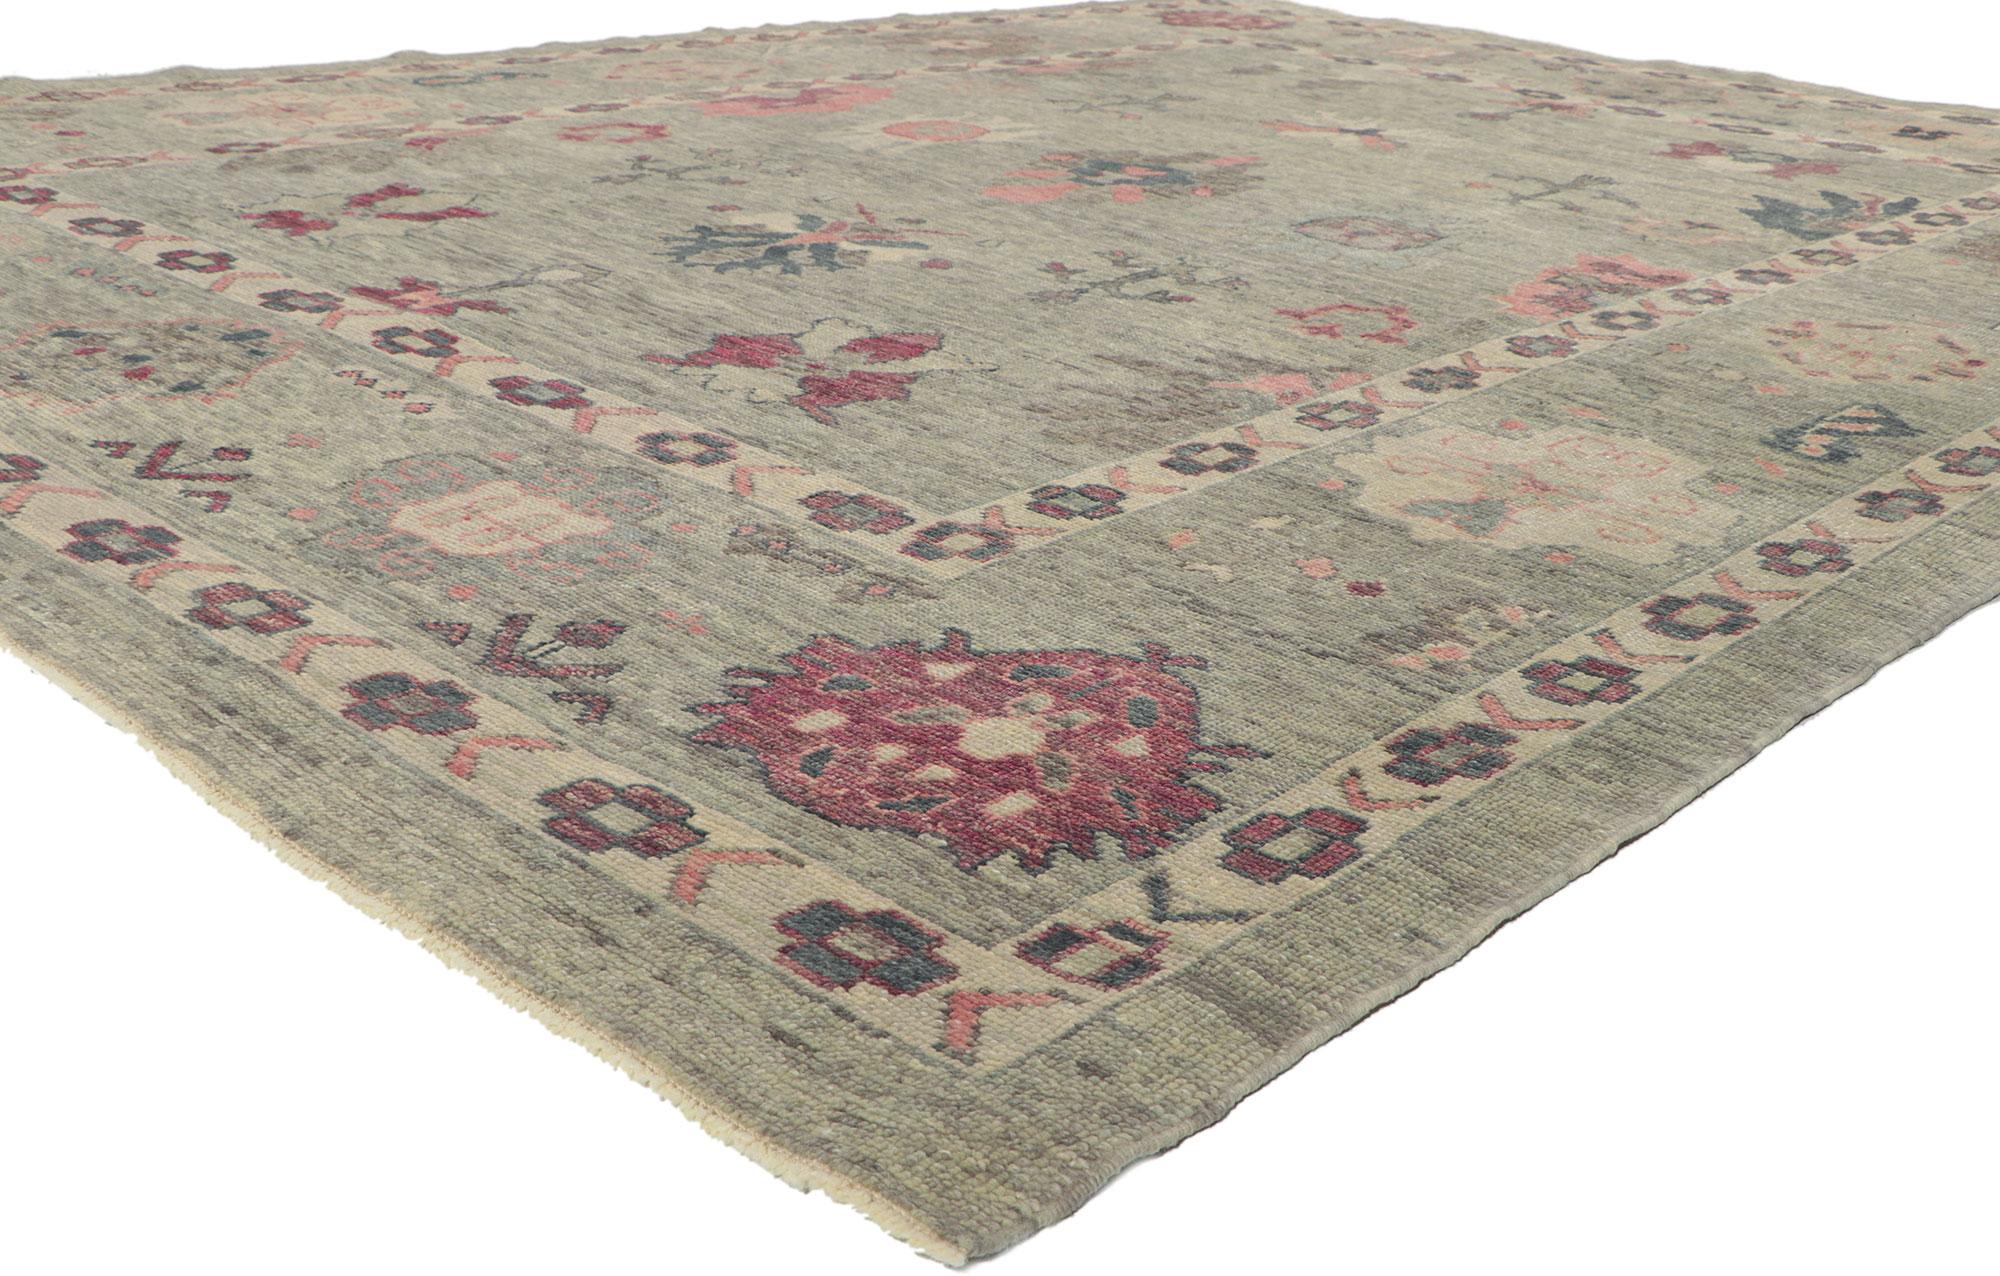 53863 Neuer farbenfroher türkischer Oushak-Teppich, 09'02 x 12'03.
Dieser handgeknüpfte türkische Oushak-Teppich aus Wolle besticht durch seinen modernen Stil, seine unglaublichen Details und seine Struktur. Das auffällige botanische Design und die